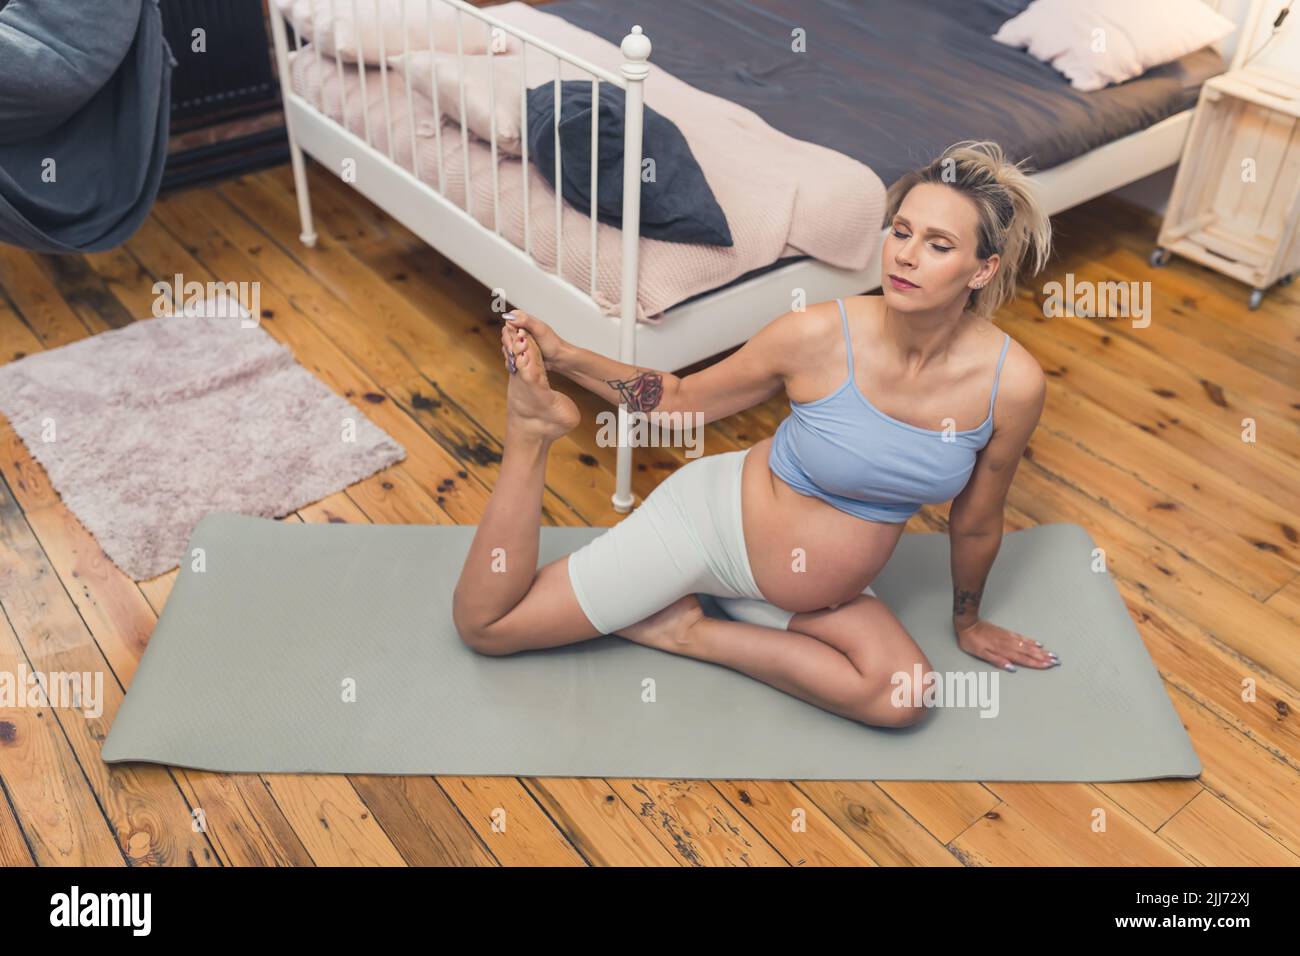 Esercizi di respirazione e stretching per le donne incinte. Giovane presto-to-mom seduta su un tappeto di yoga con e tenendo una delle sue gambe in su mentre respira tranquillamente. Concetto di gravidanza attiva. Foto di alta qualità Foto Stock